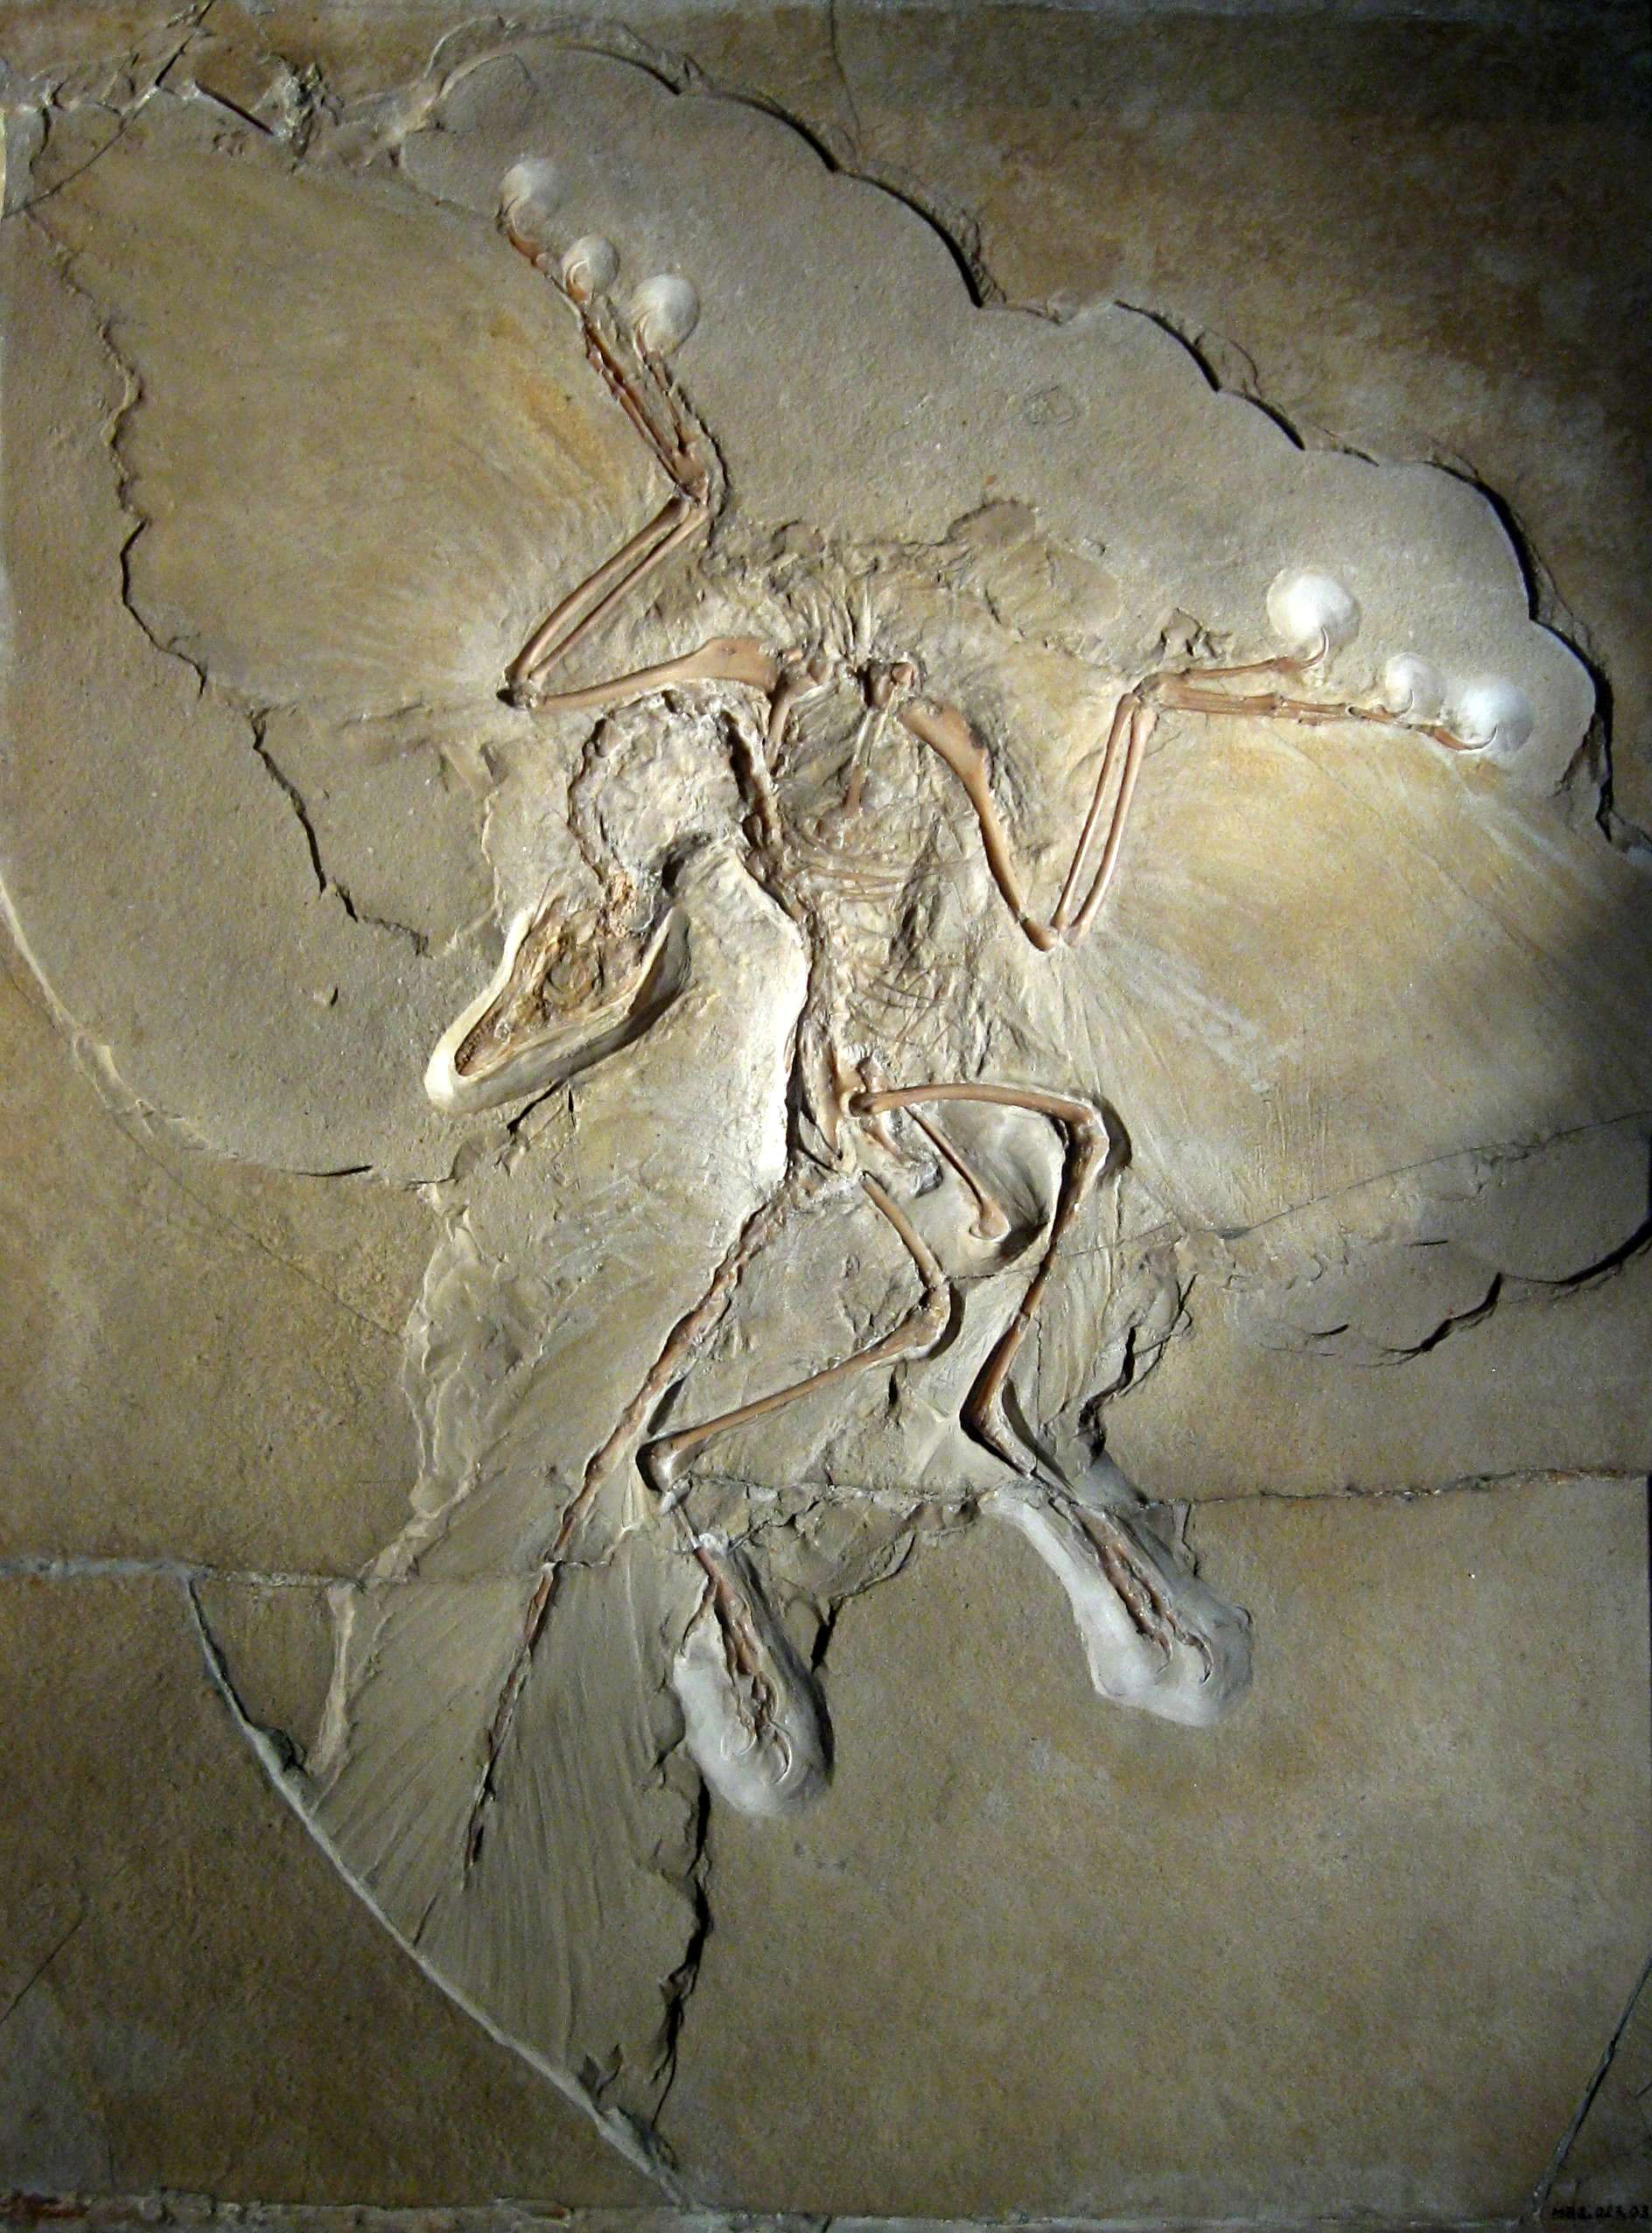 Ο αρχαιοπτέρυξ ή αρχαιοπτέρυγα (Archaeopteryx), αναφερόμενο μερικές φορές και με το γερμανικό του όνομα, Urvogel («το πρώτο πτηνό»), είναι το αρχαιότερο και πιο πρωτόγονο γένος πτηνών που είναι γνωστό. Το όνομα προέρχεται από τα αρχαία ελληνικά ἀρχαῖος και πτέρυξ.